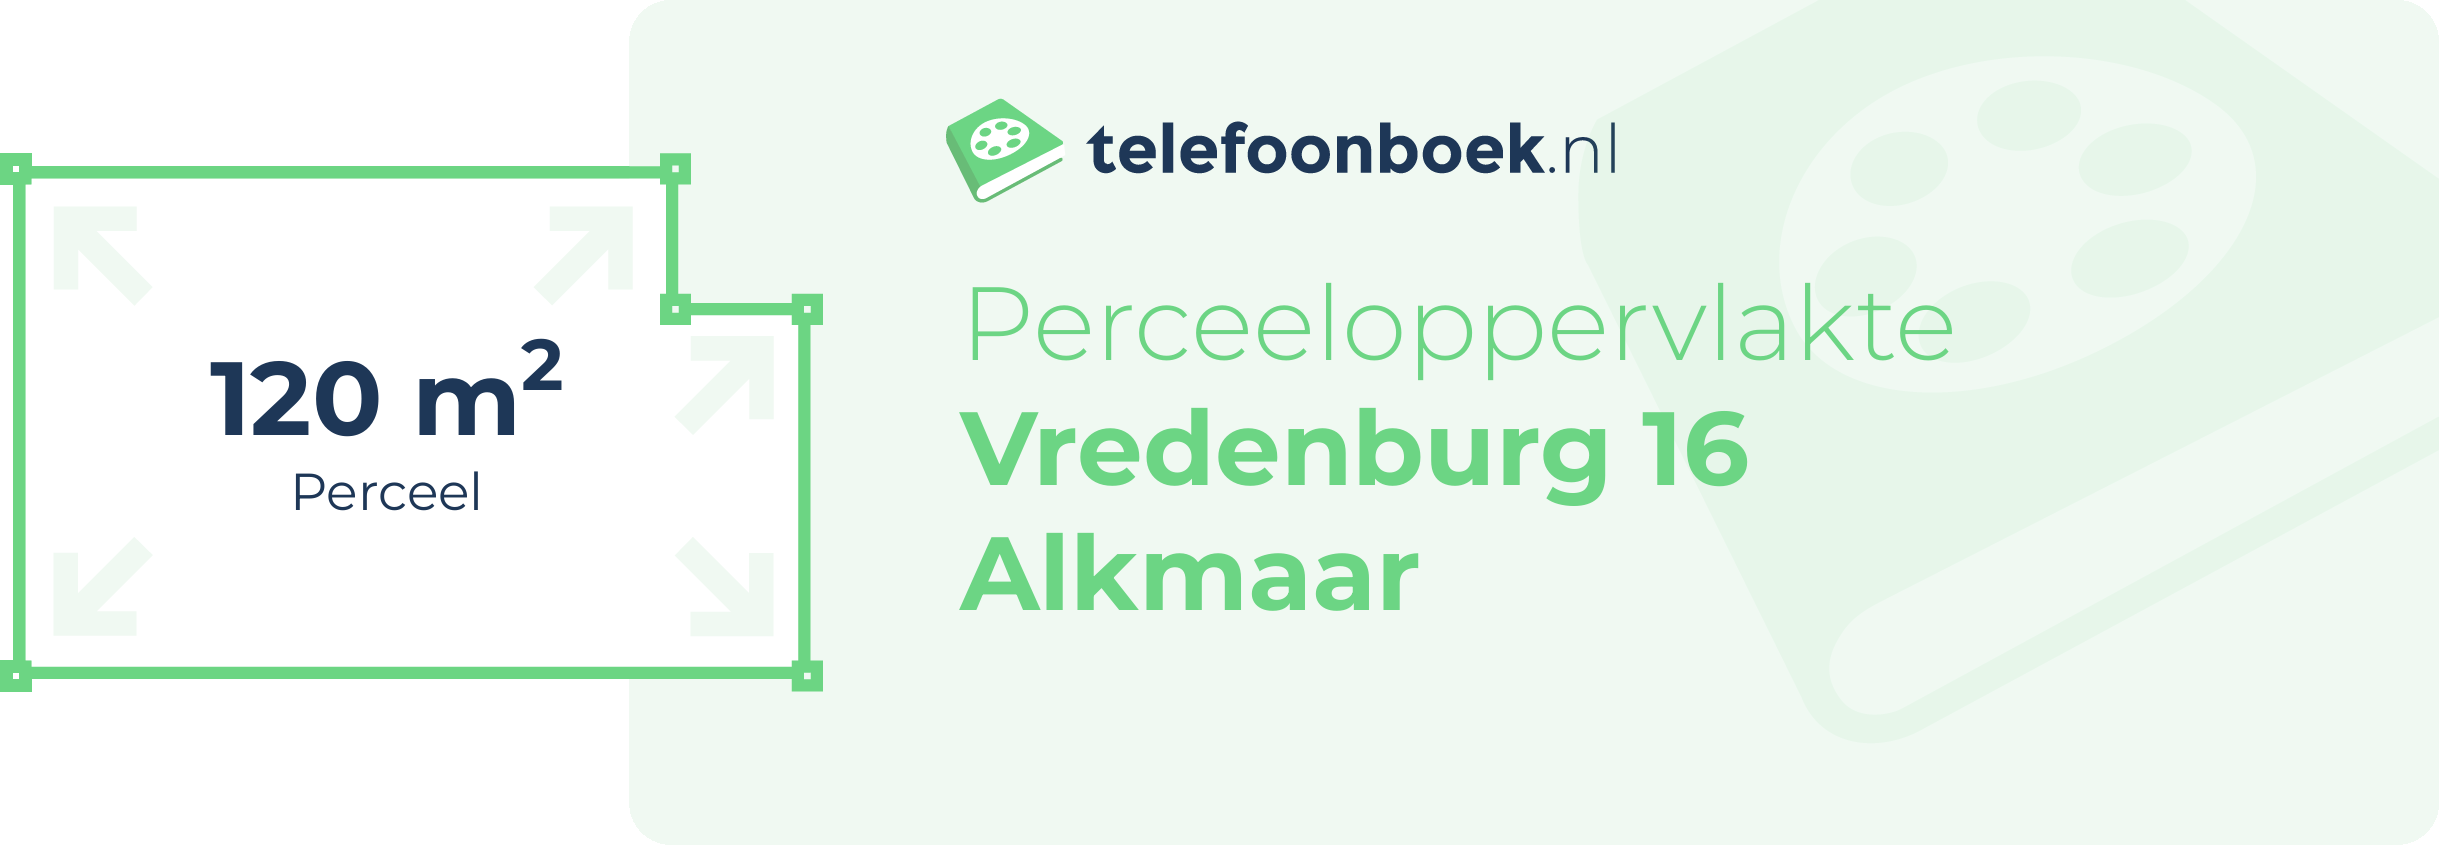 Perceeloppervlakte Vredenburg 16 Alkmaar